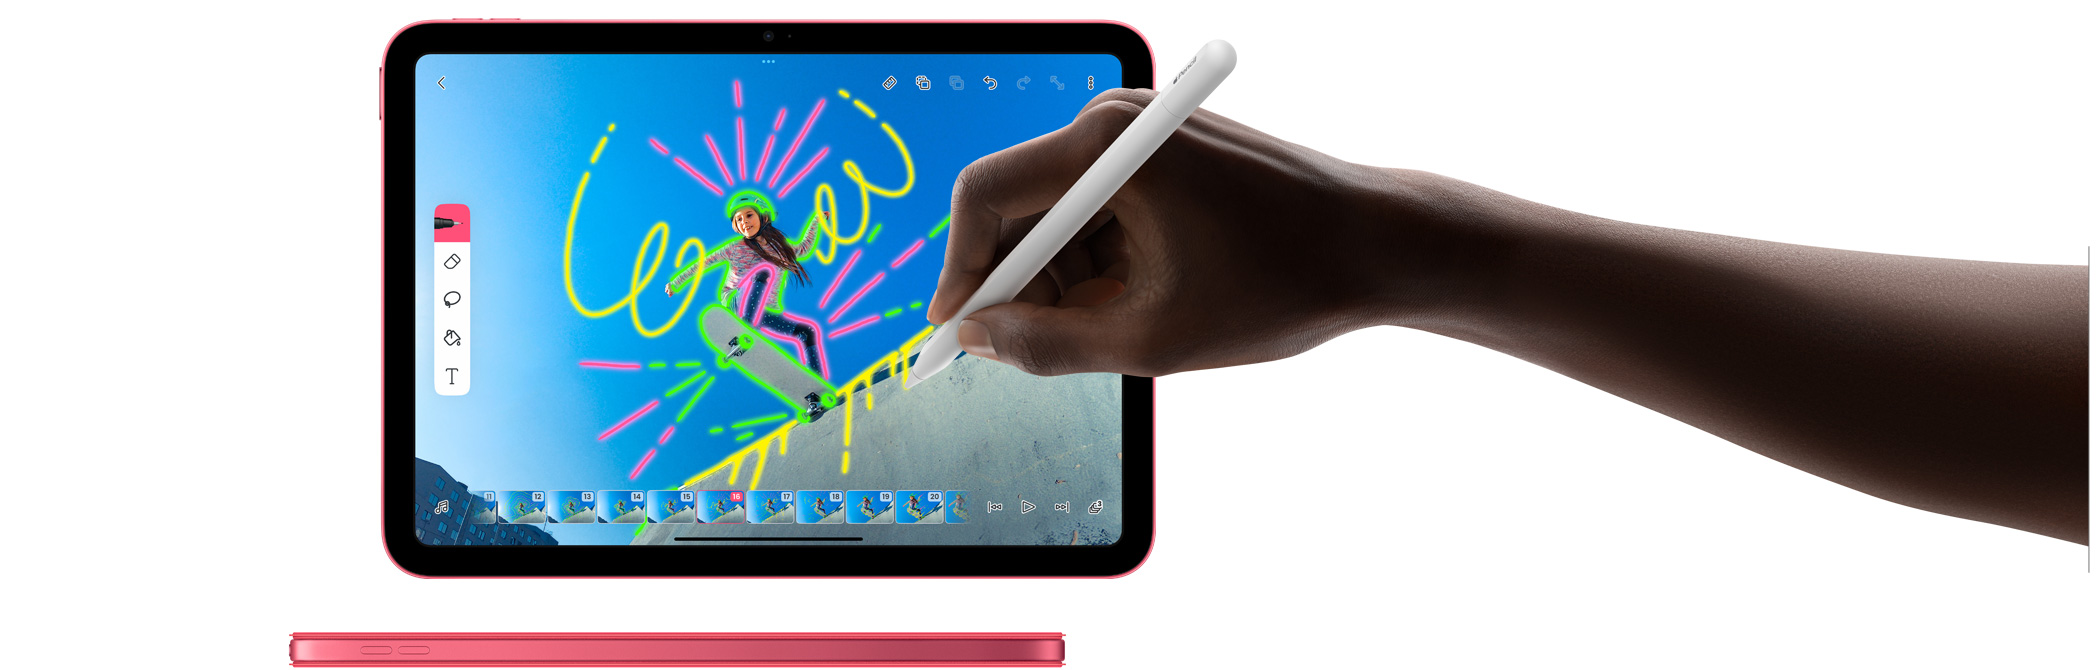 一隻手使用 Apple Pencil 直接在 Flip-a-Clip app 的影片上畫圖。